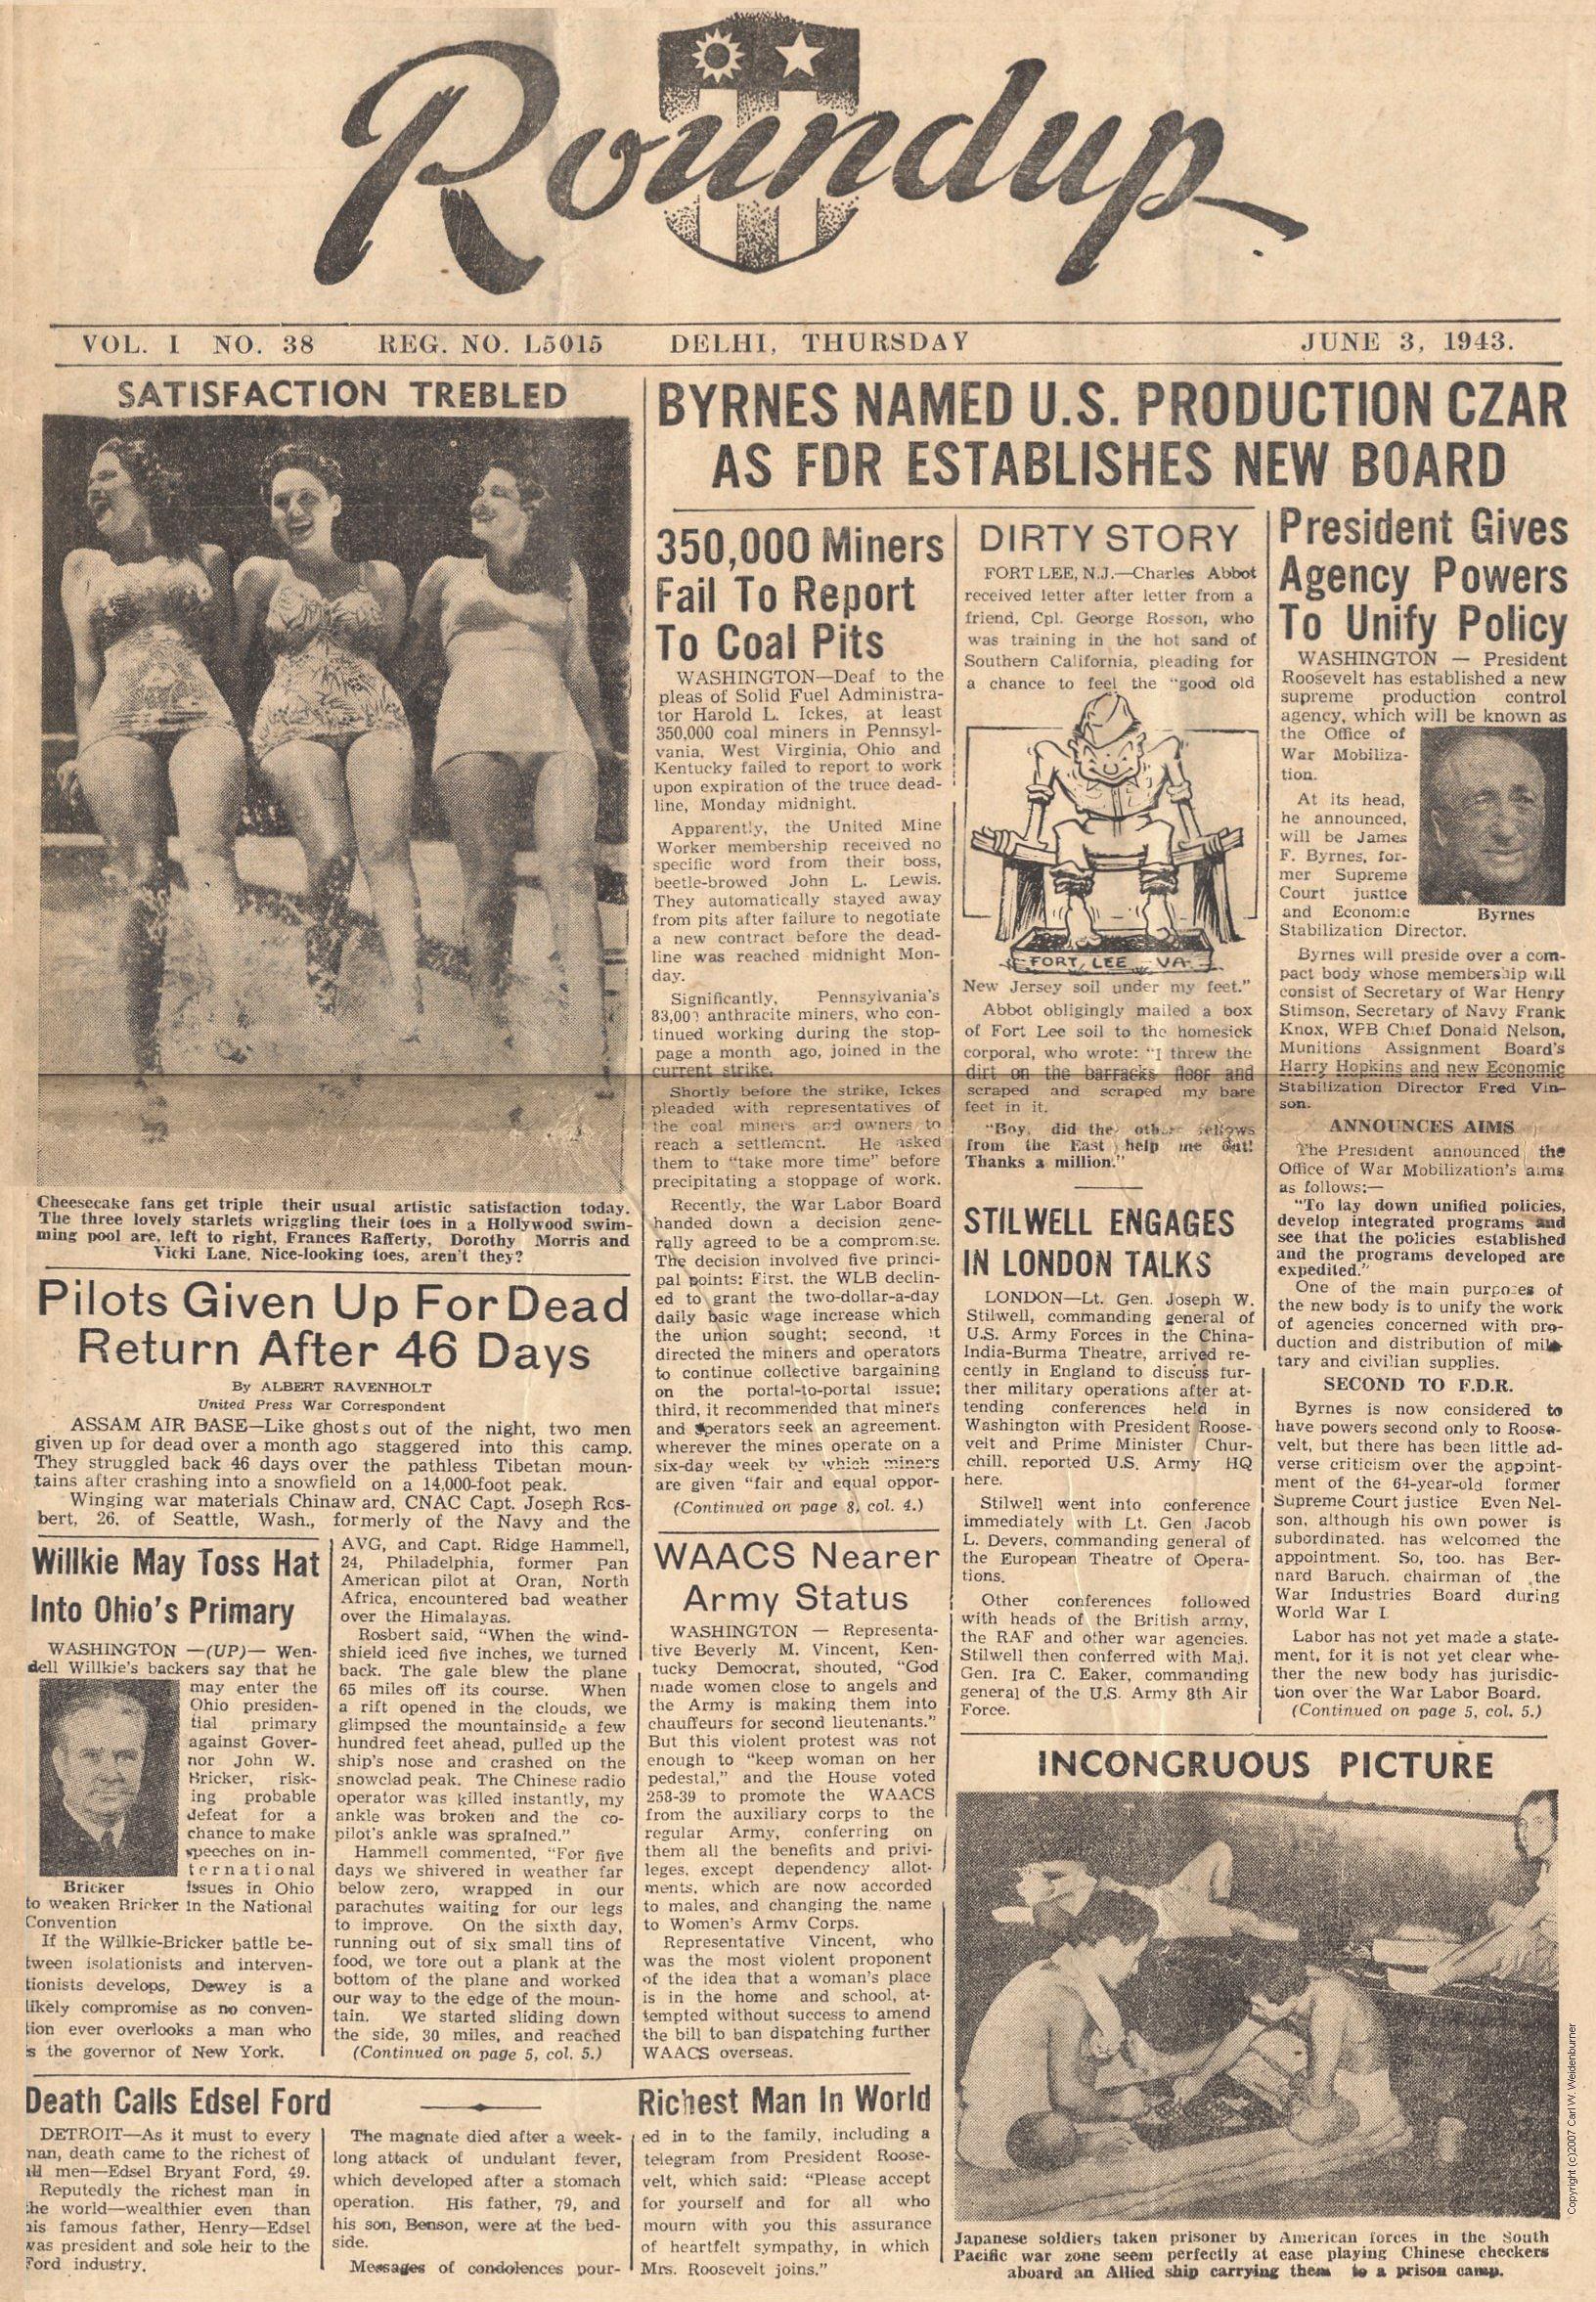  CBI Roundup - June 3, 1943 - Page 1 